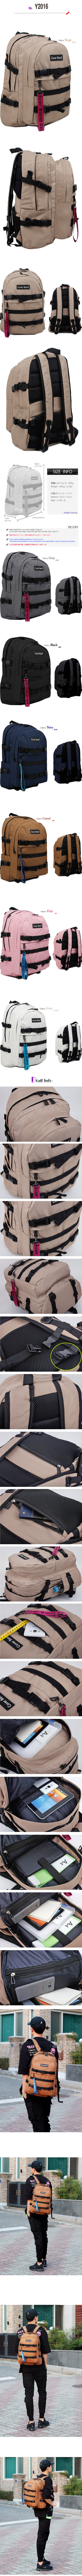 backpackY2016.jpg